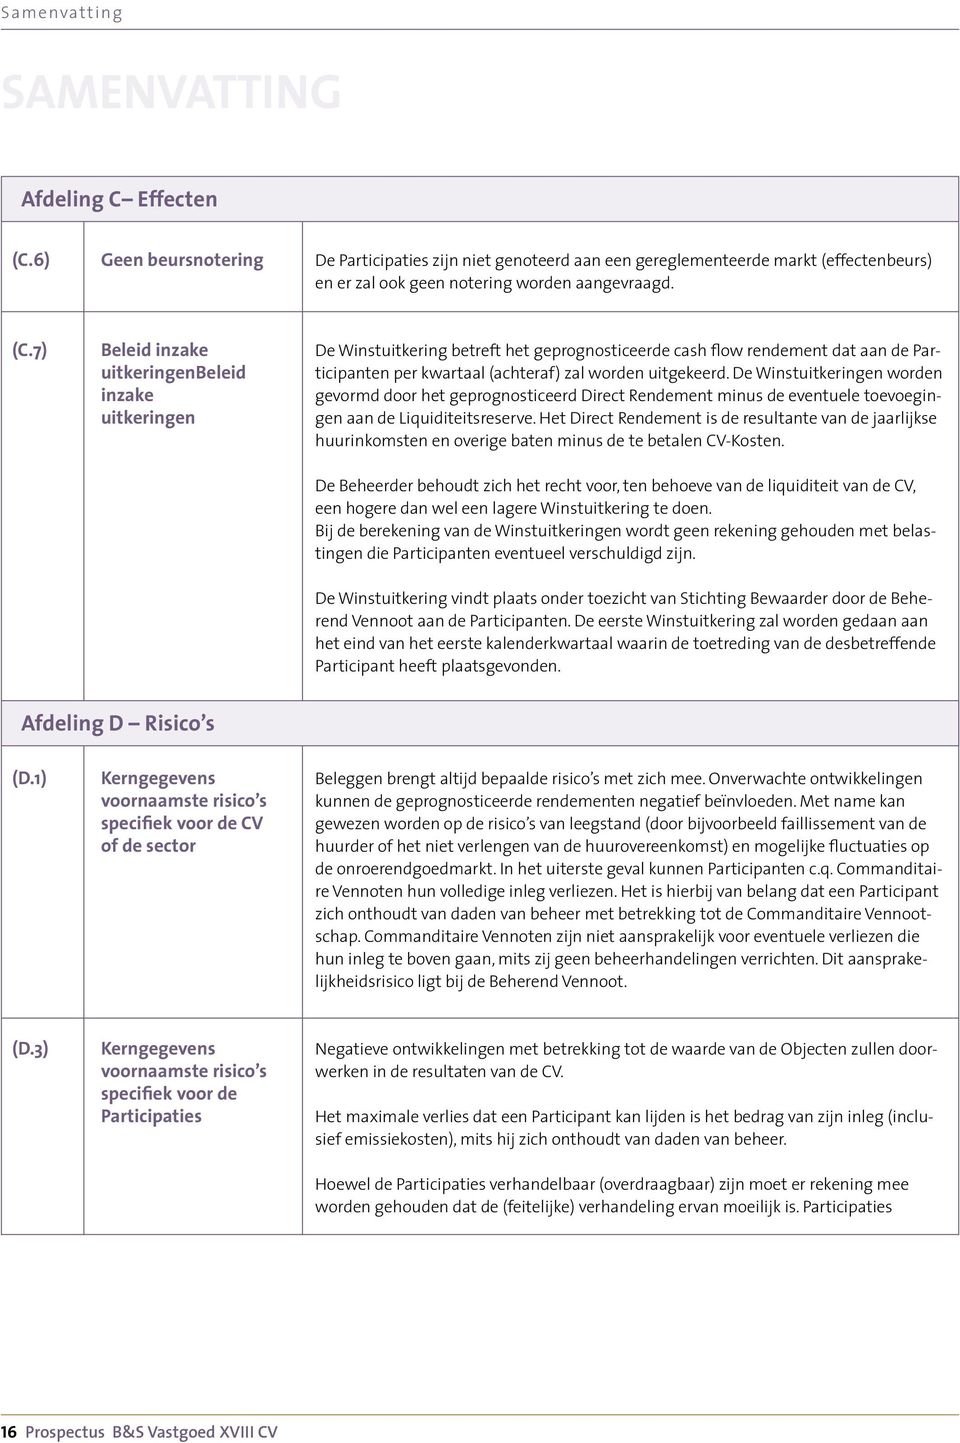 7) Beleid inzake uitkeringenbeleid inzake uitkeringen De Winstuitkering betreft het geprognosticeerde cash flow rendement dat aan de Participanten per kwartaal (achteraf) zal worden uitgekeerd.